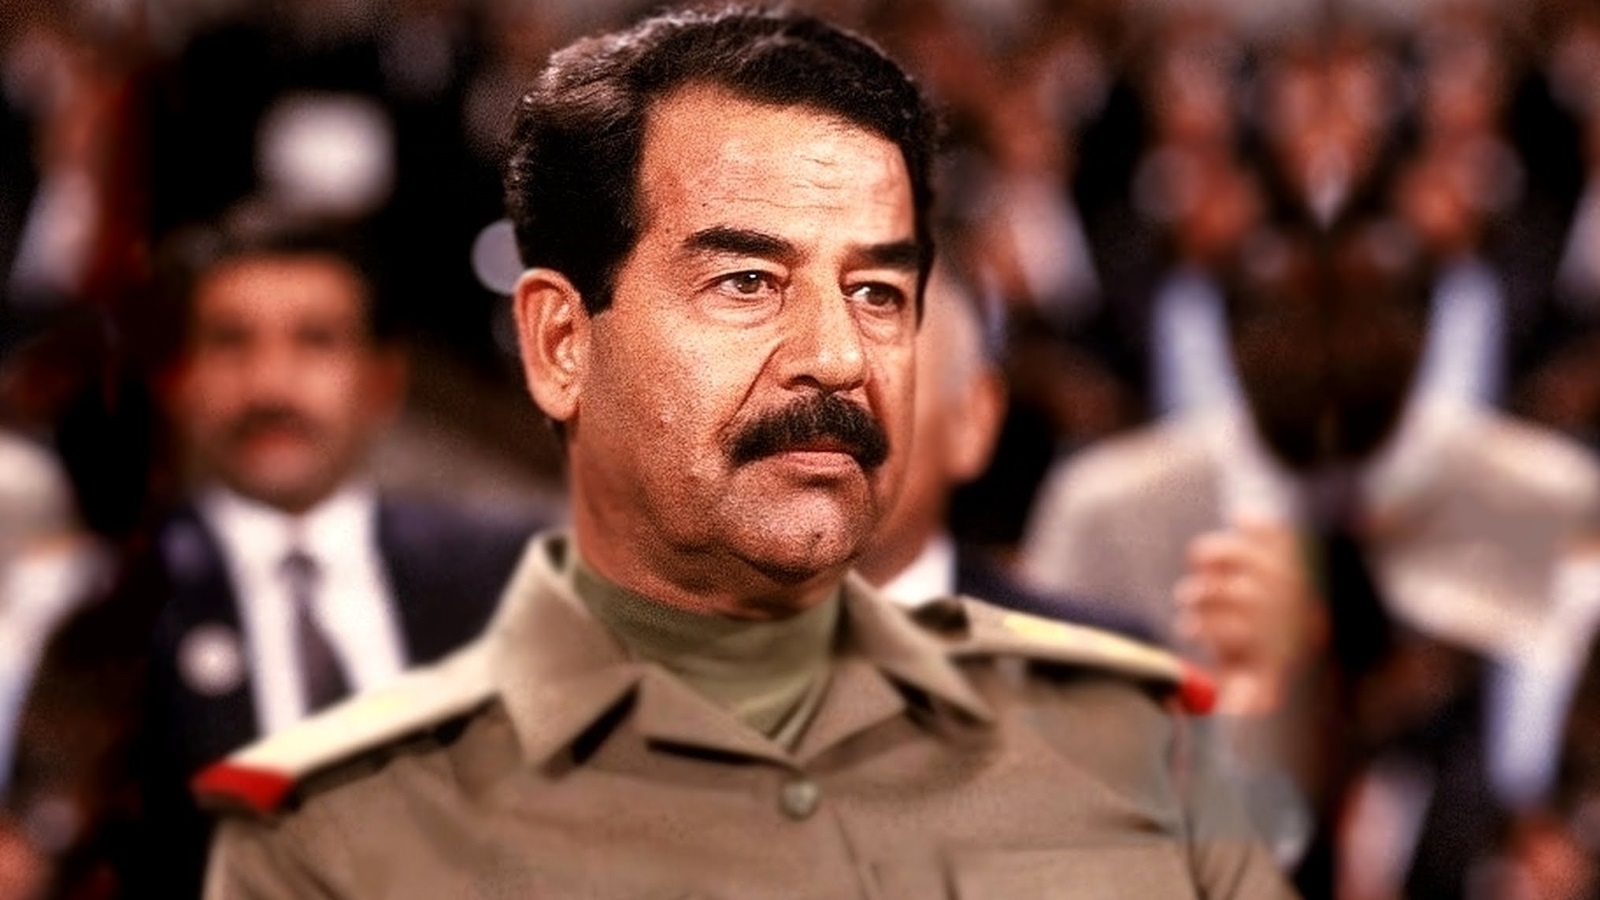 صدام حسين الذي كان جيشه محسوبا على المدرسة العسكرية السوفياتية، تحالف سرّا وعلنا مع الأمريكان ضد إيران التي خاض ضدها حربا طاحنة، ثم تطورت الأمور باحتلاله الكويت وتخلي السوفييت بزعامة غورباتشوف عنه